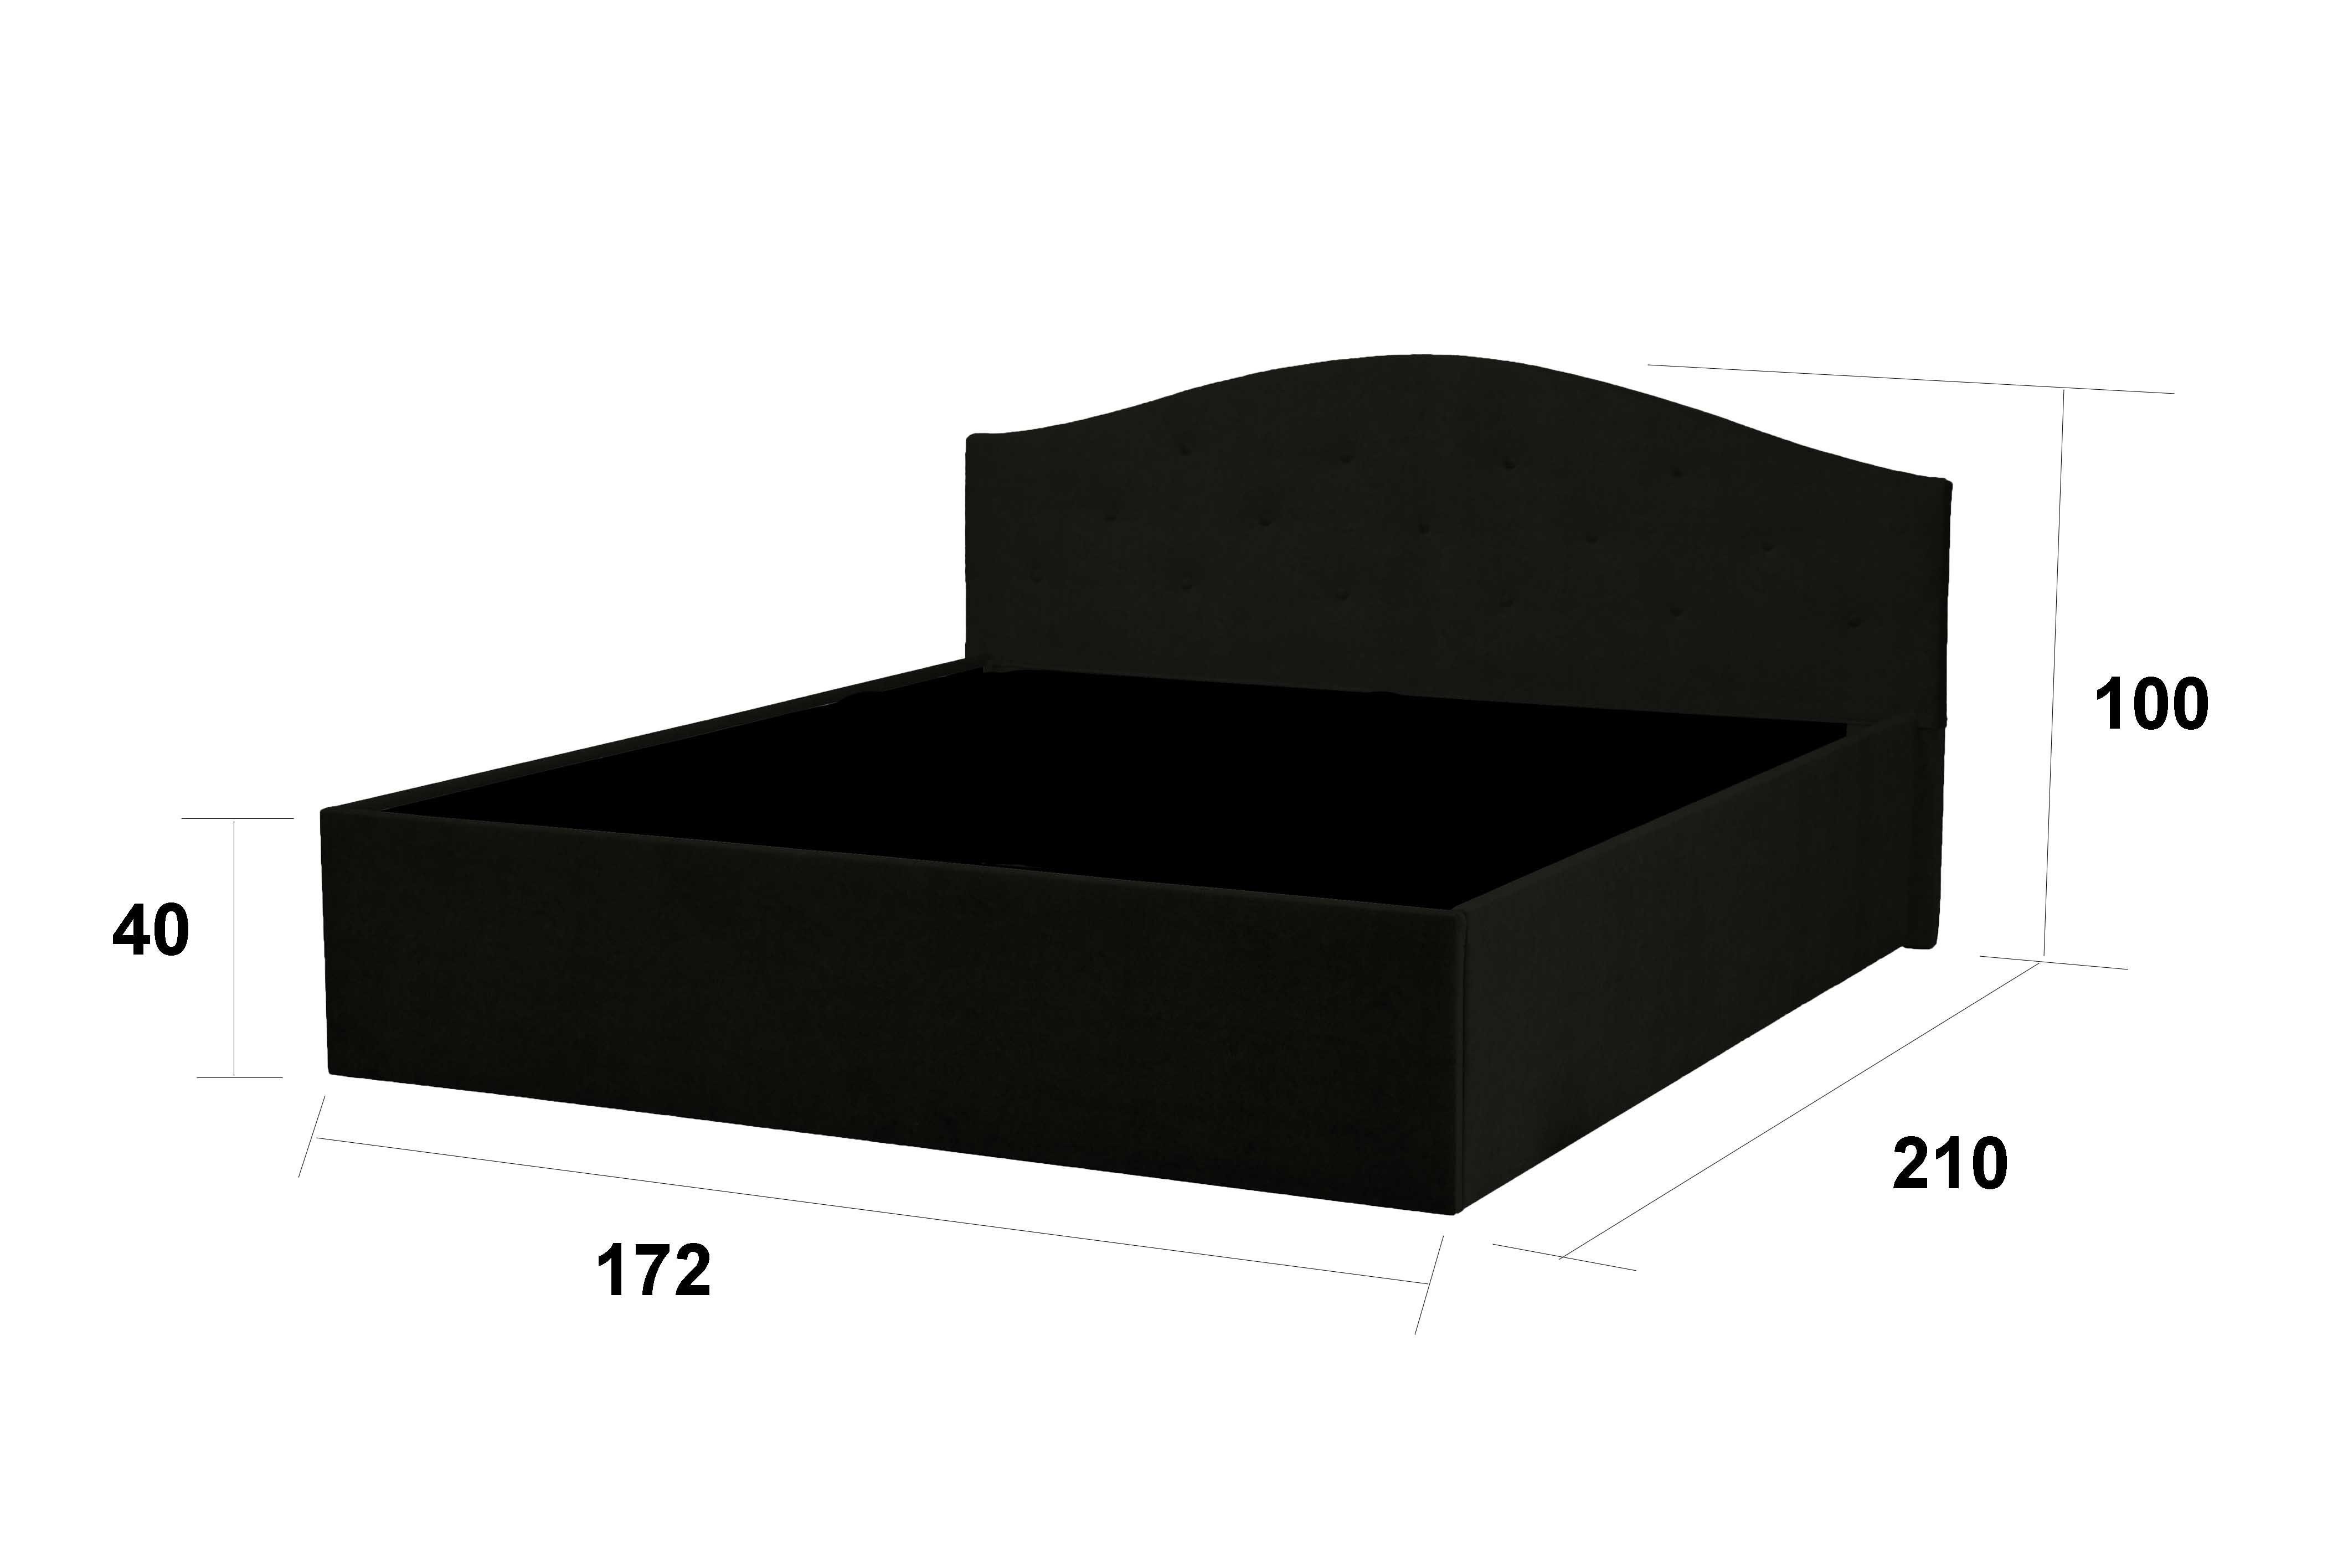 Halmon ist mit Lattenrost erhältlich Matratze bei der Betten Schlafkomfort Polsterbett Grau Oslo, ein Ausführung